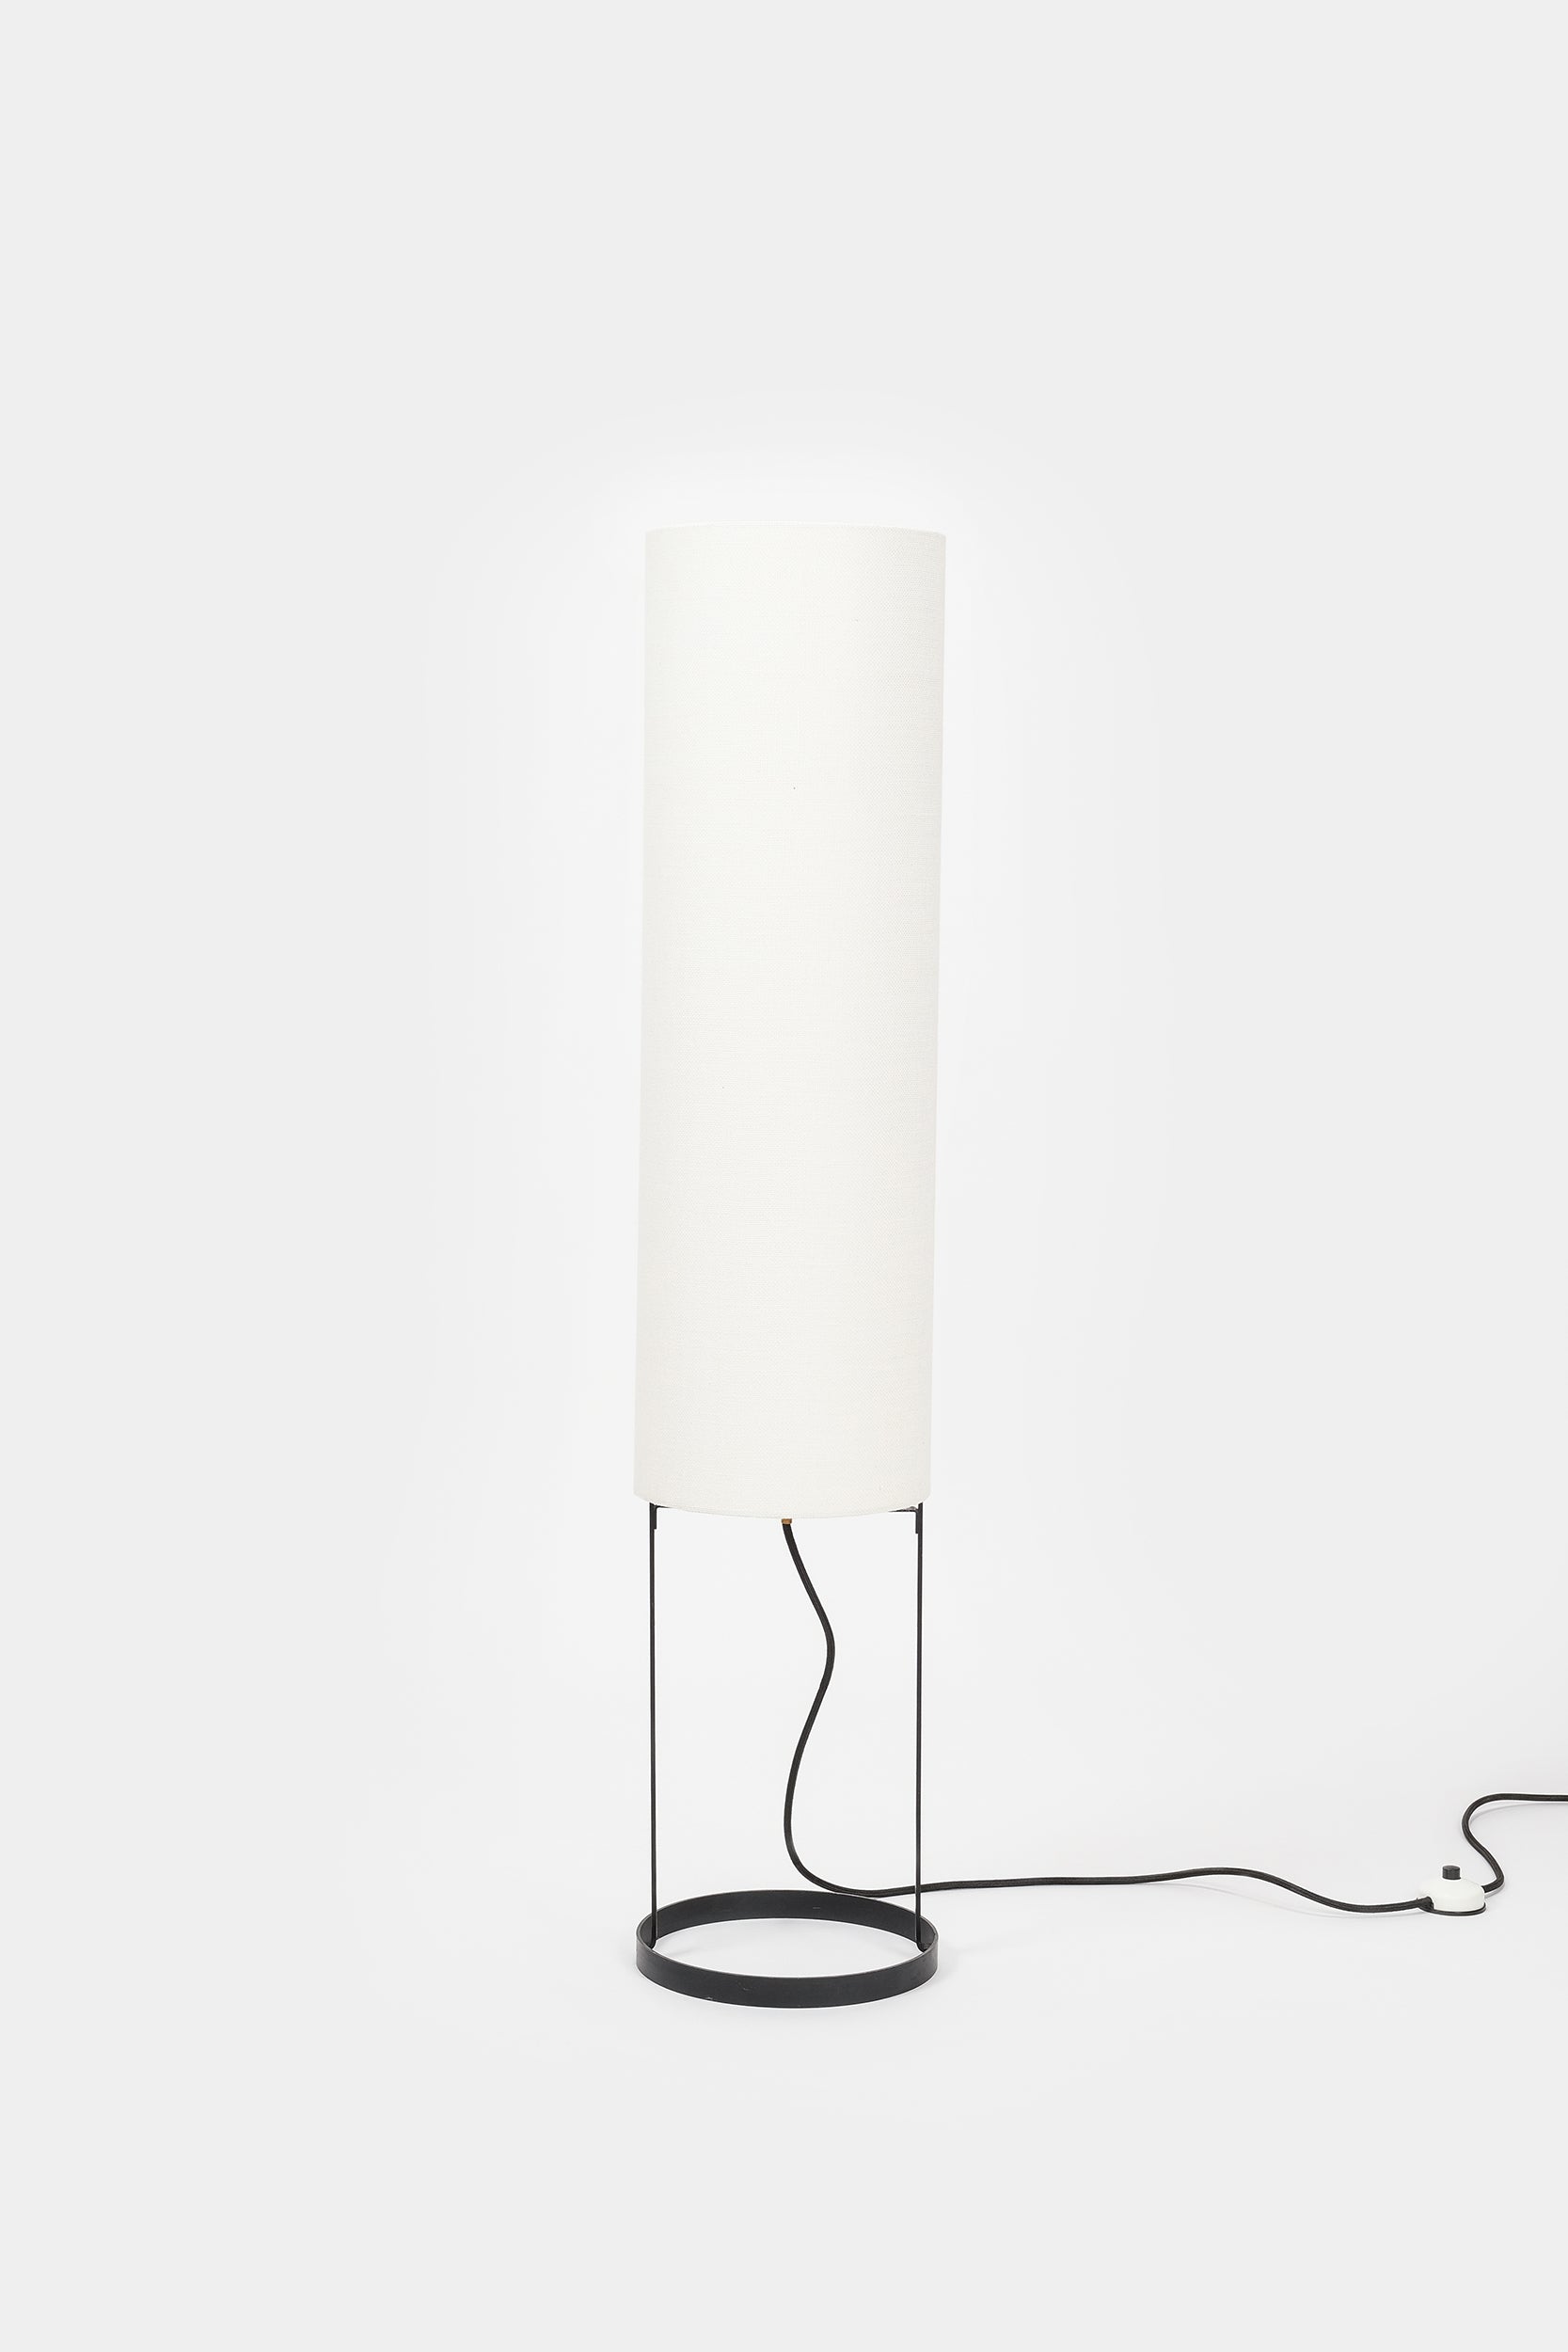 Tubus Floor Lamp, Switzerland, 60s